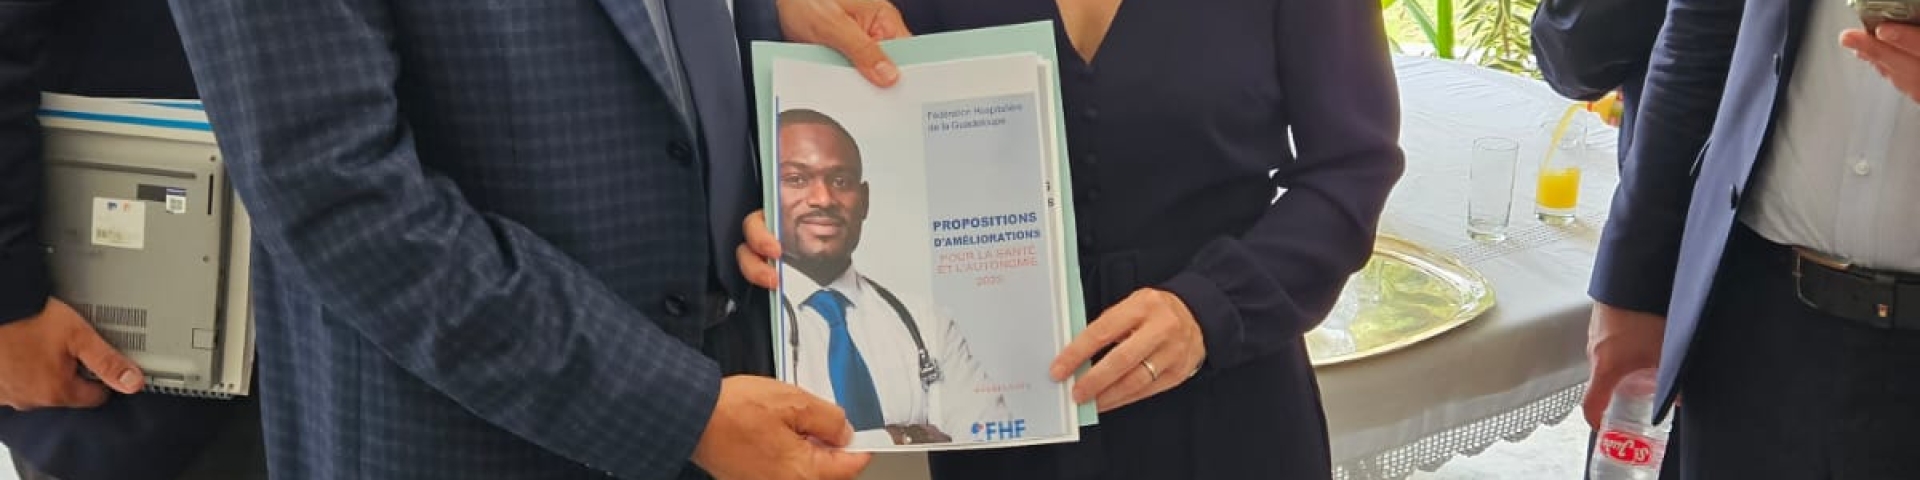 Le Président de la FHG remet au Ministre la plateforme de propositions d'améliorations pour la santé et l'autonomie